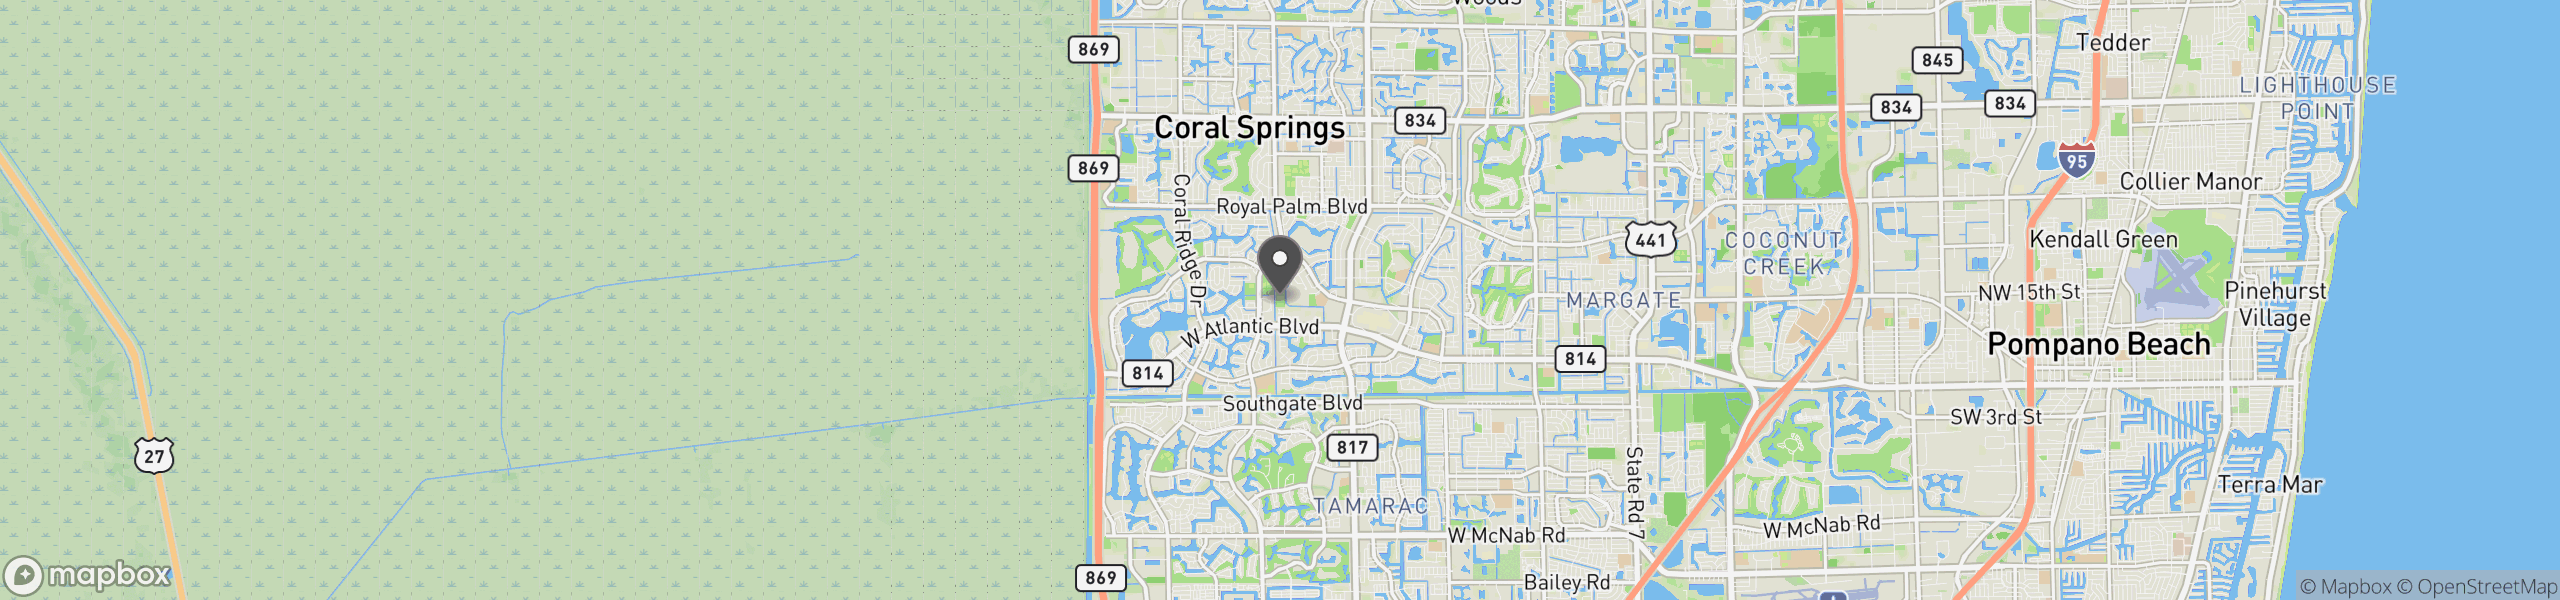 Coral Springs, FL 33071